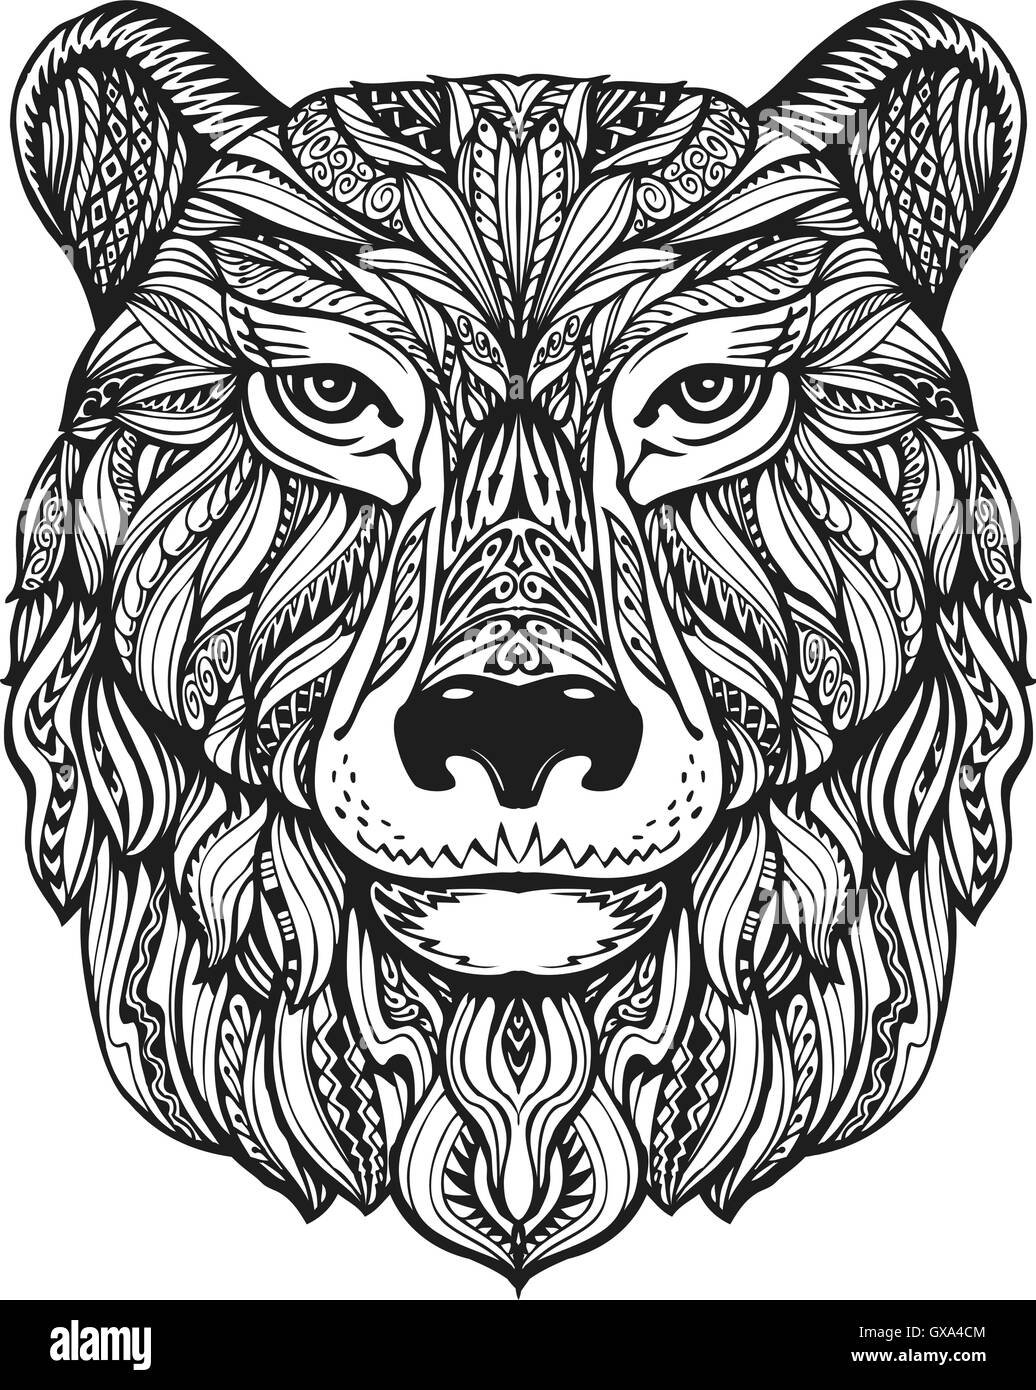 Bear "oder" grizzly Kopf isoliert auf weißem Hintergrund. Hand gezeichnet Vektor-Illustration mit dekorativen Elementen Stock Vektor